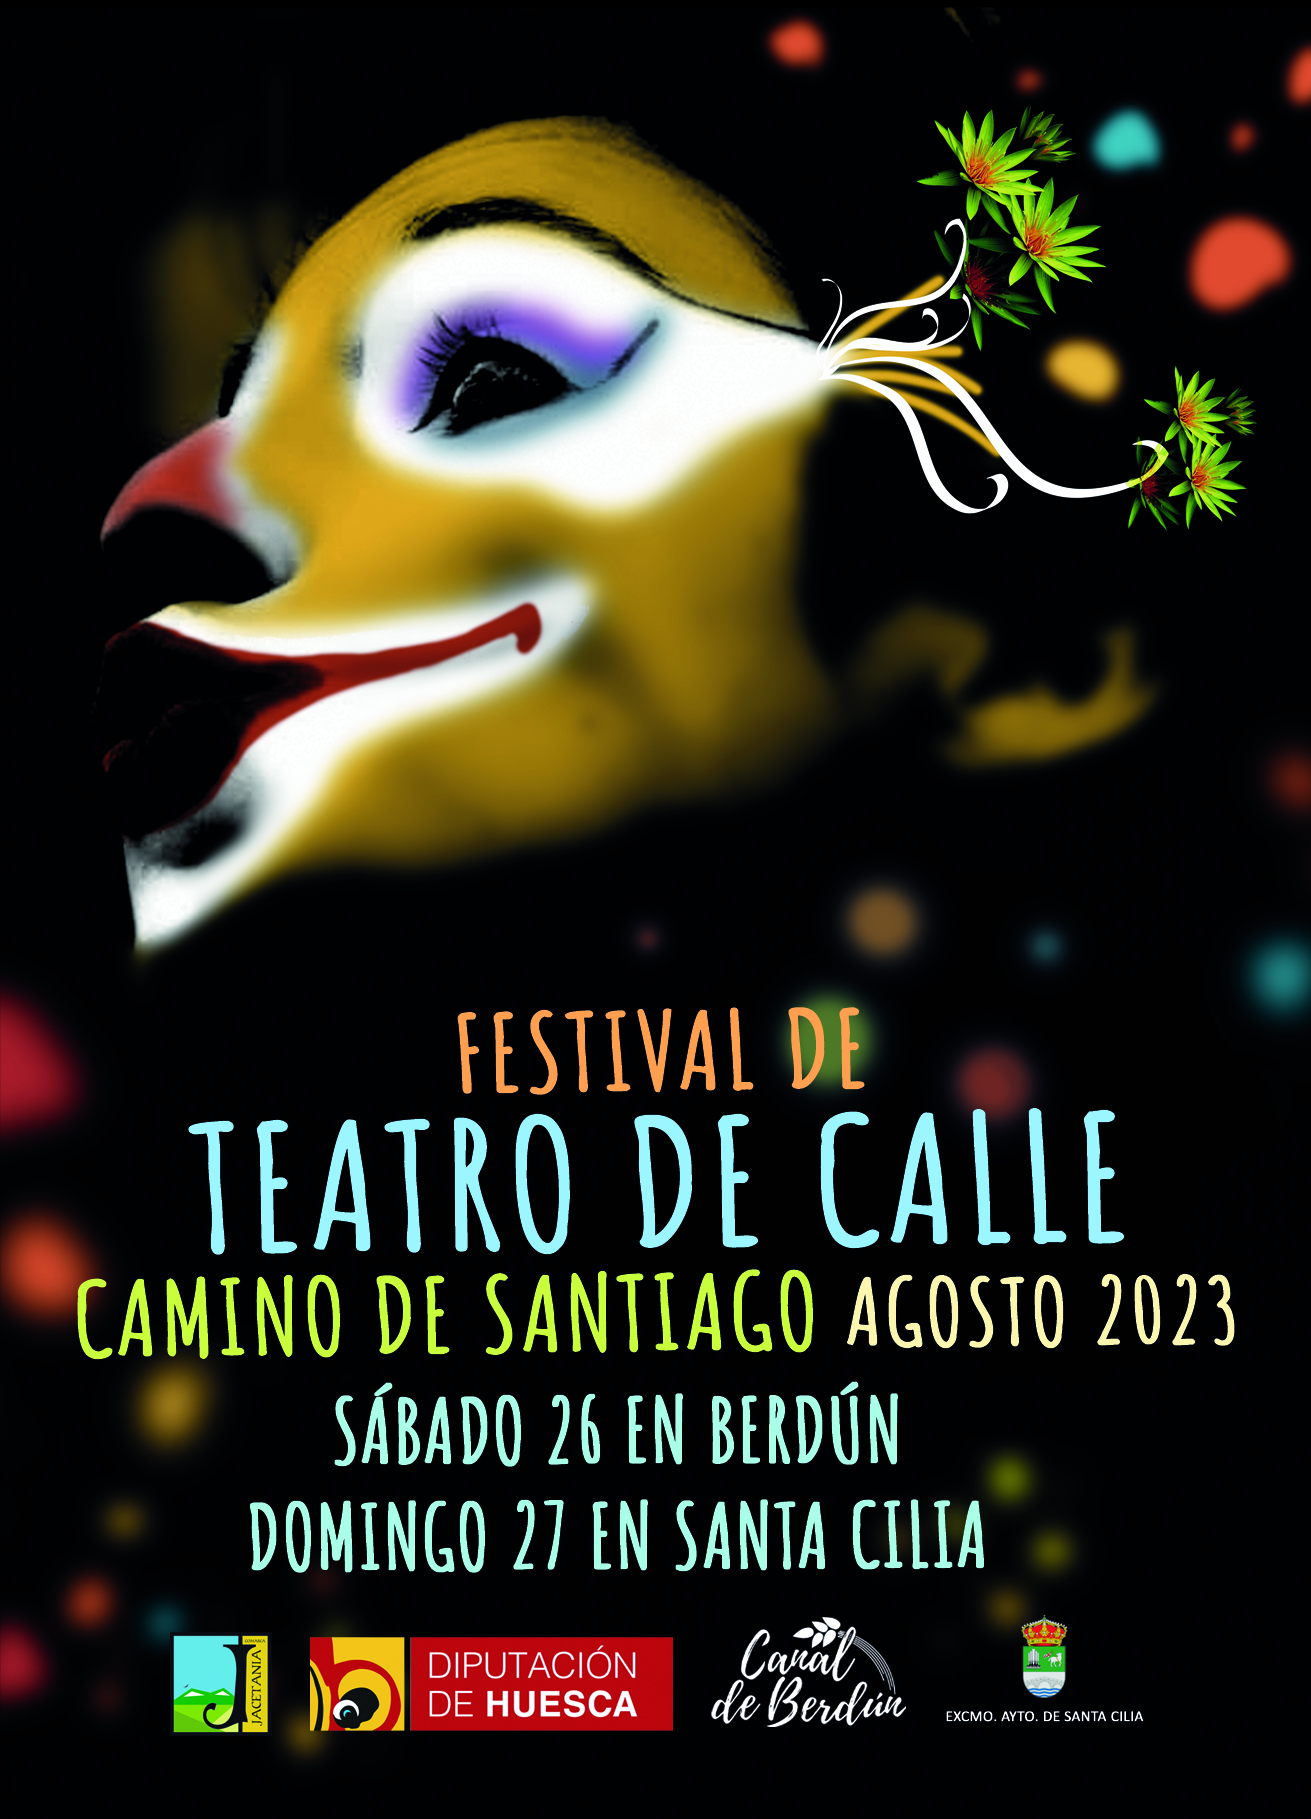 El Festival de Teatro de Calle Camino de Santiago se celebra en Berdún y Santa Cilia